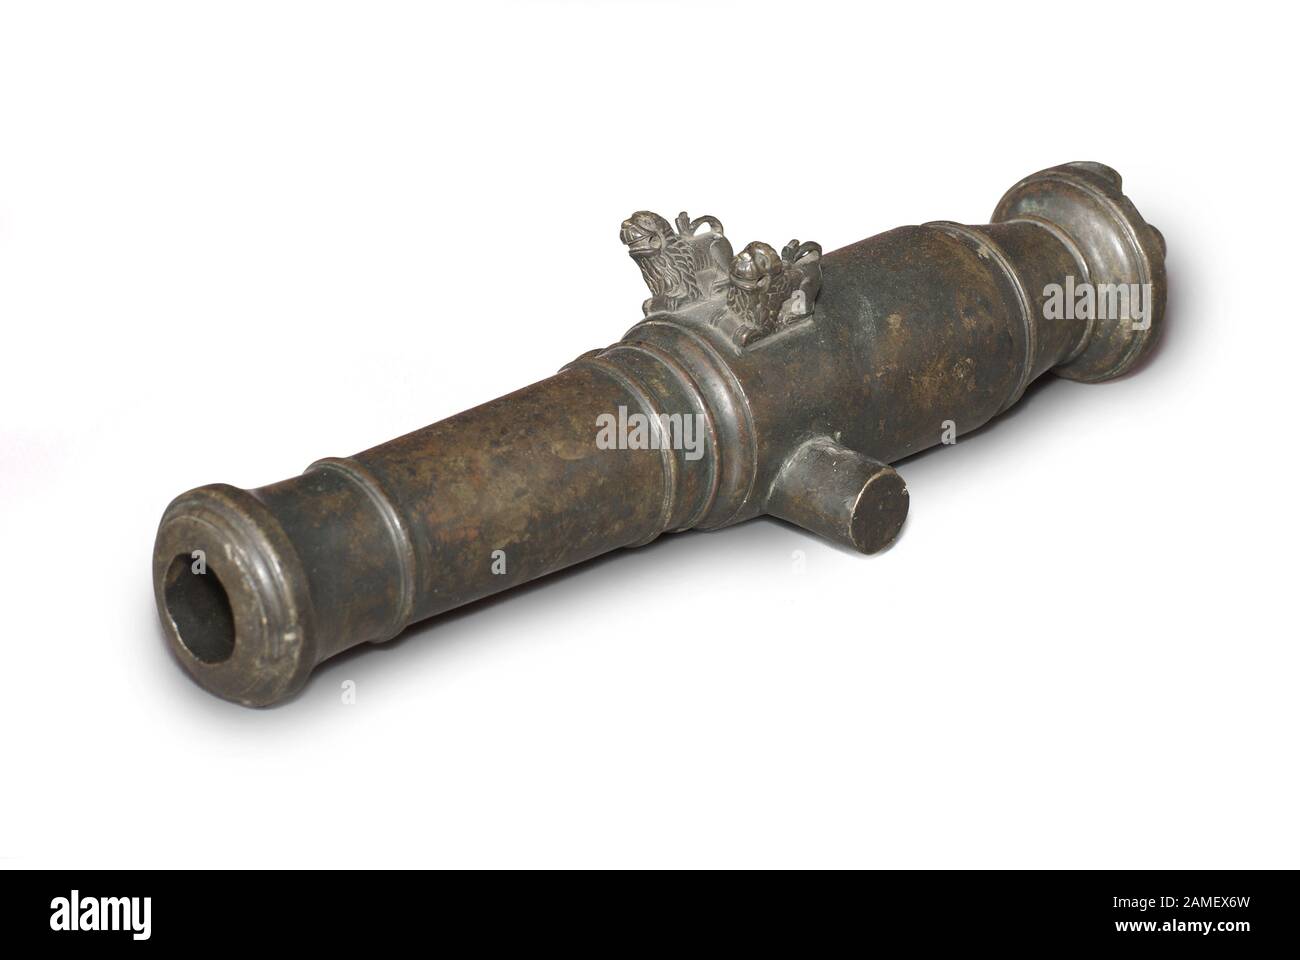 Mortier d'artillerie de signal. Russie. xviiie siècle. Chemin sur fond blanc Banque D'Images